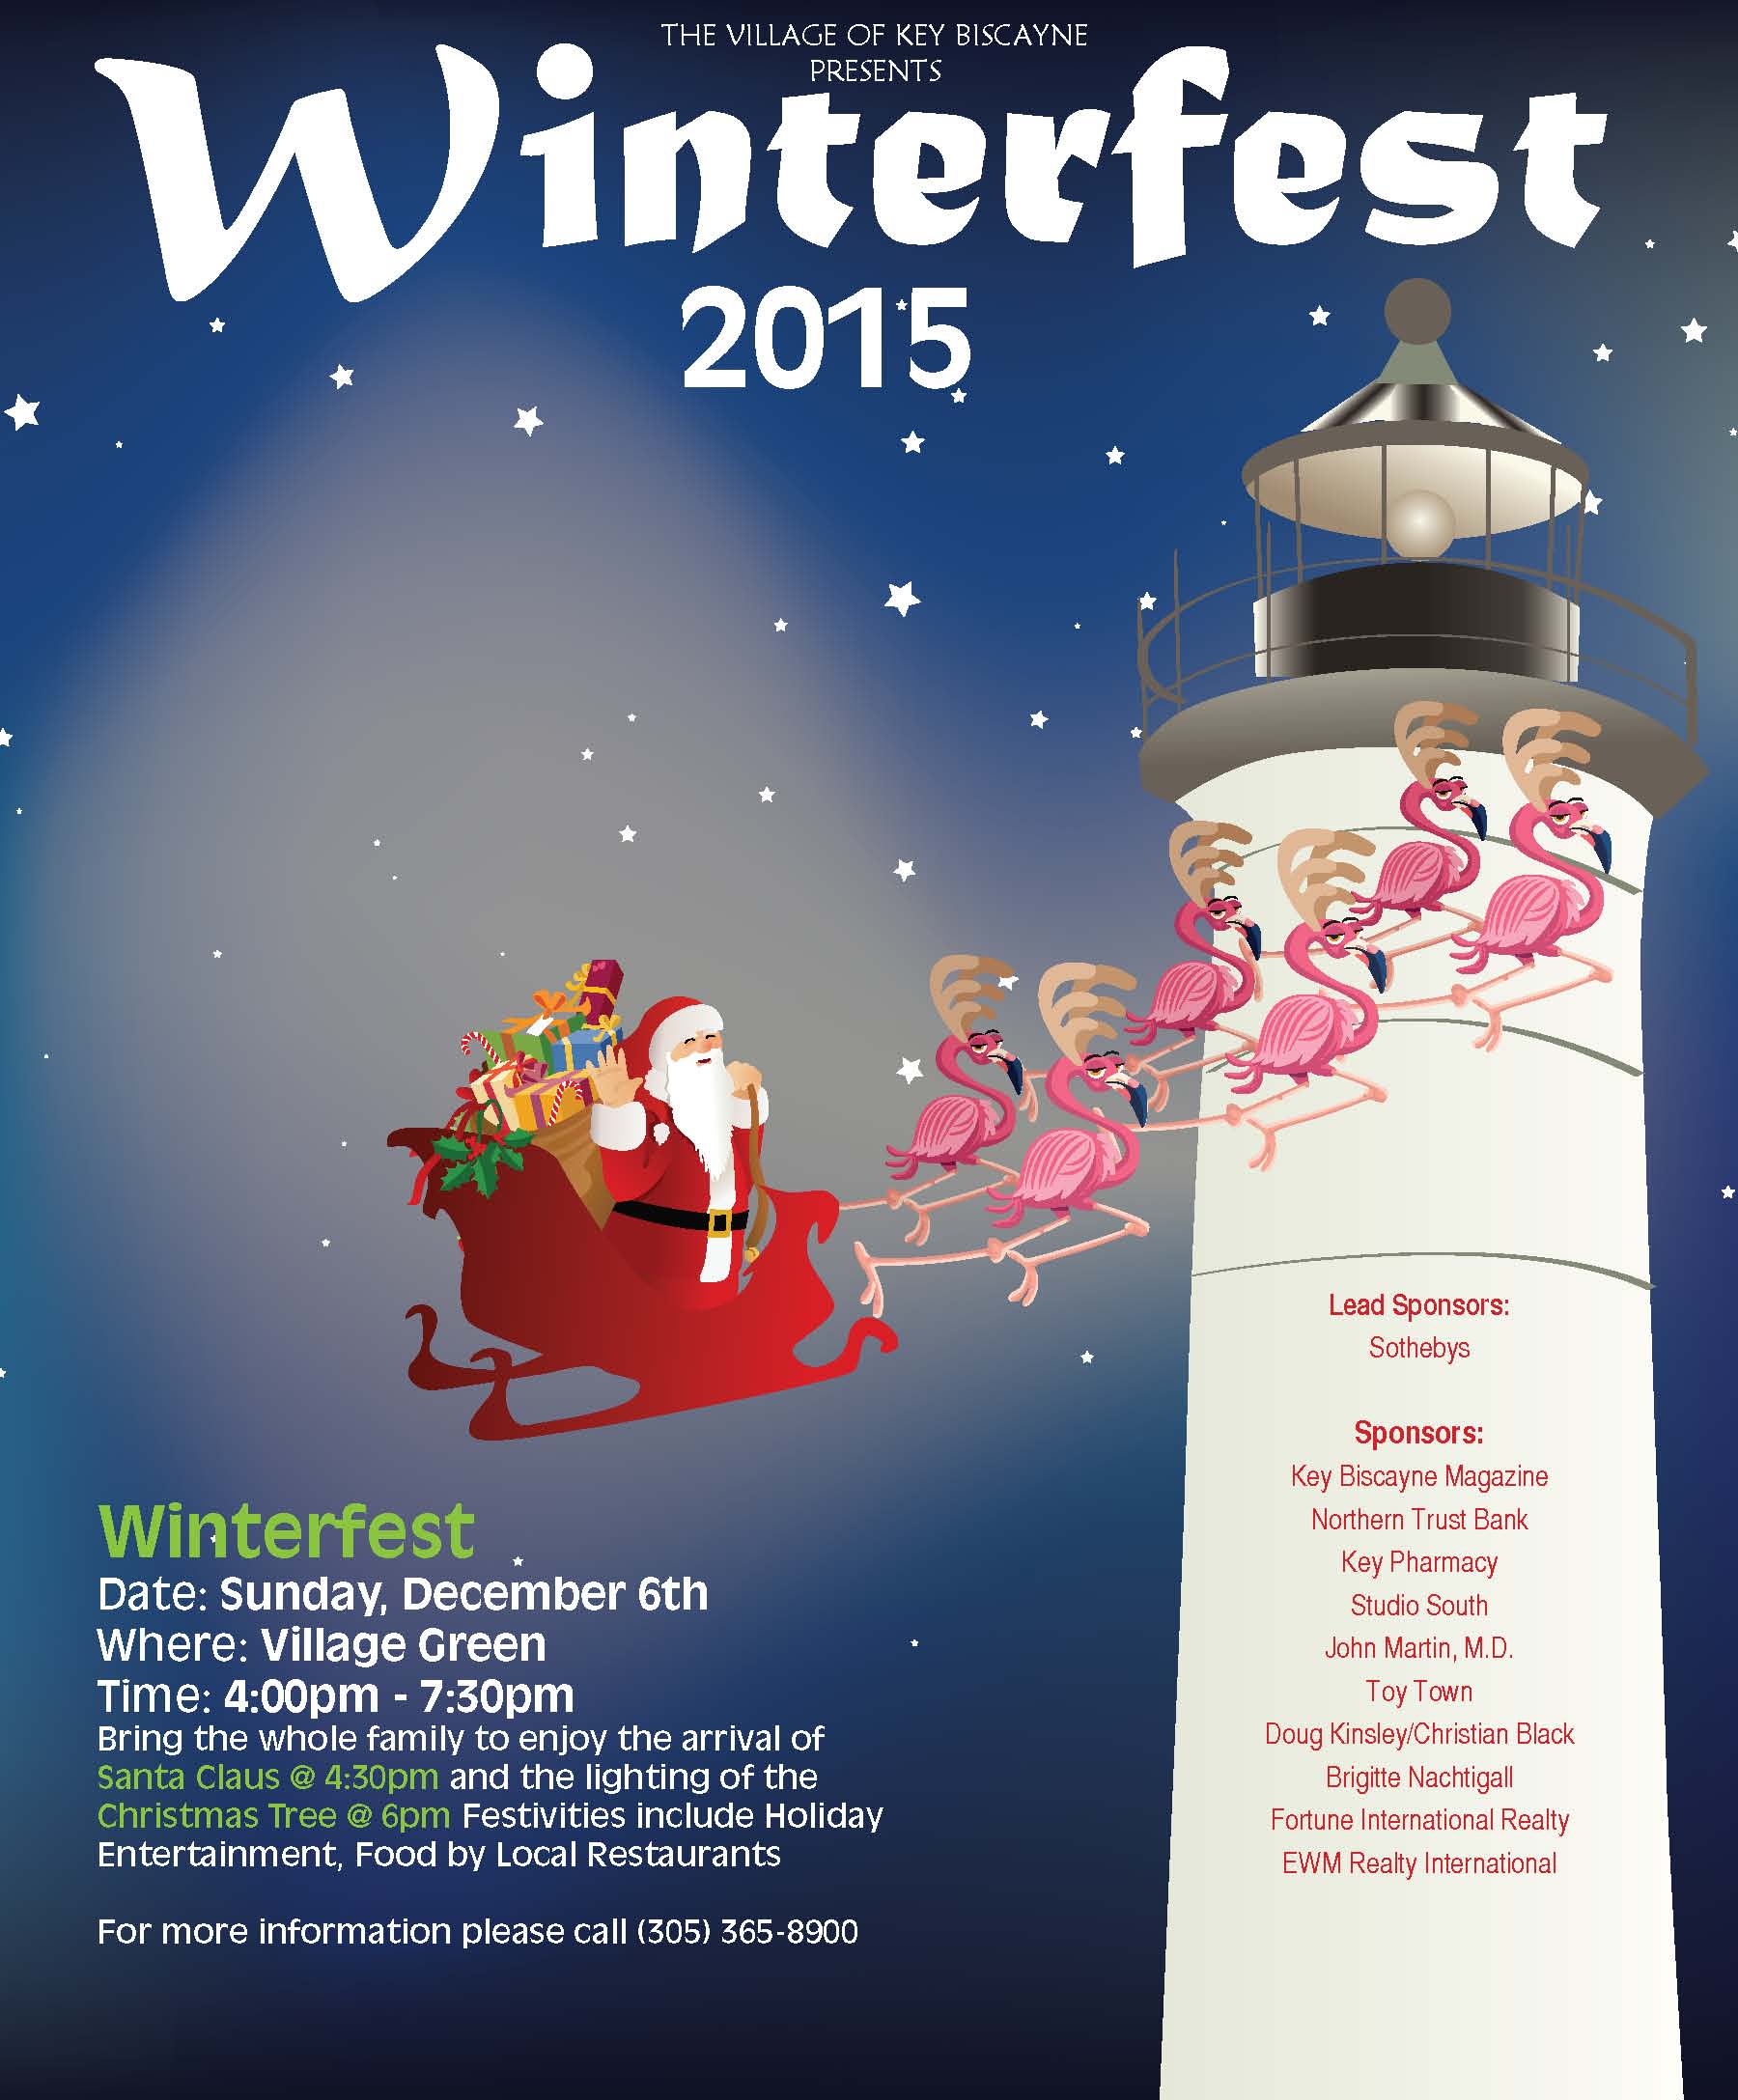 Key Biscayne Winterfest 2015!!!